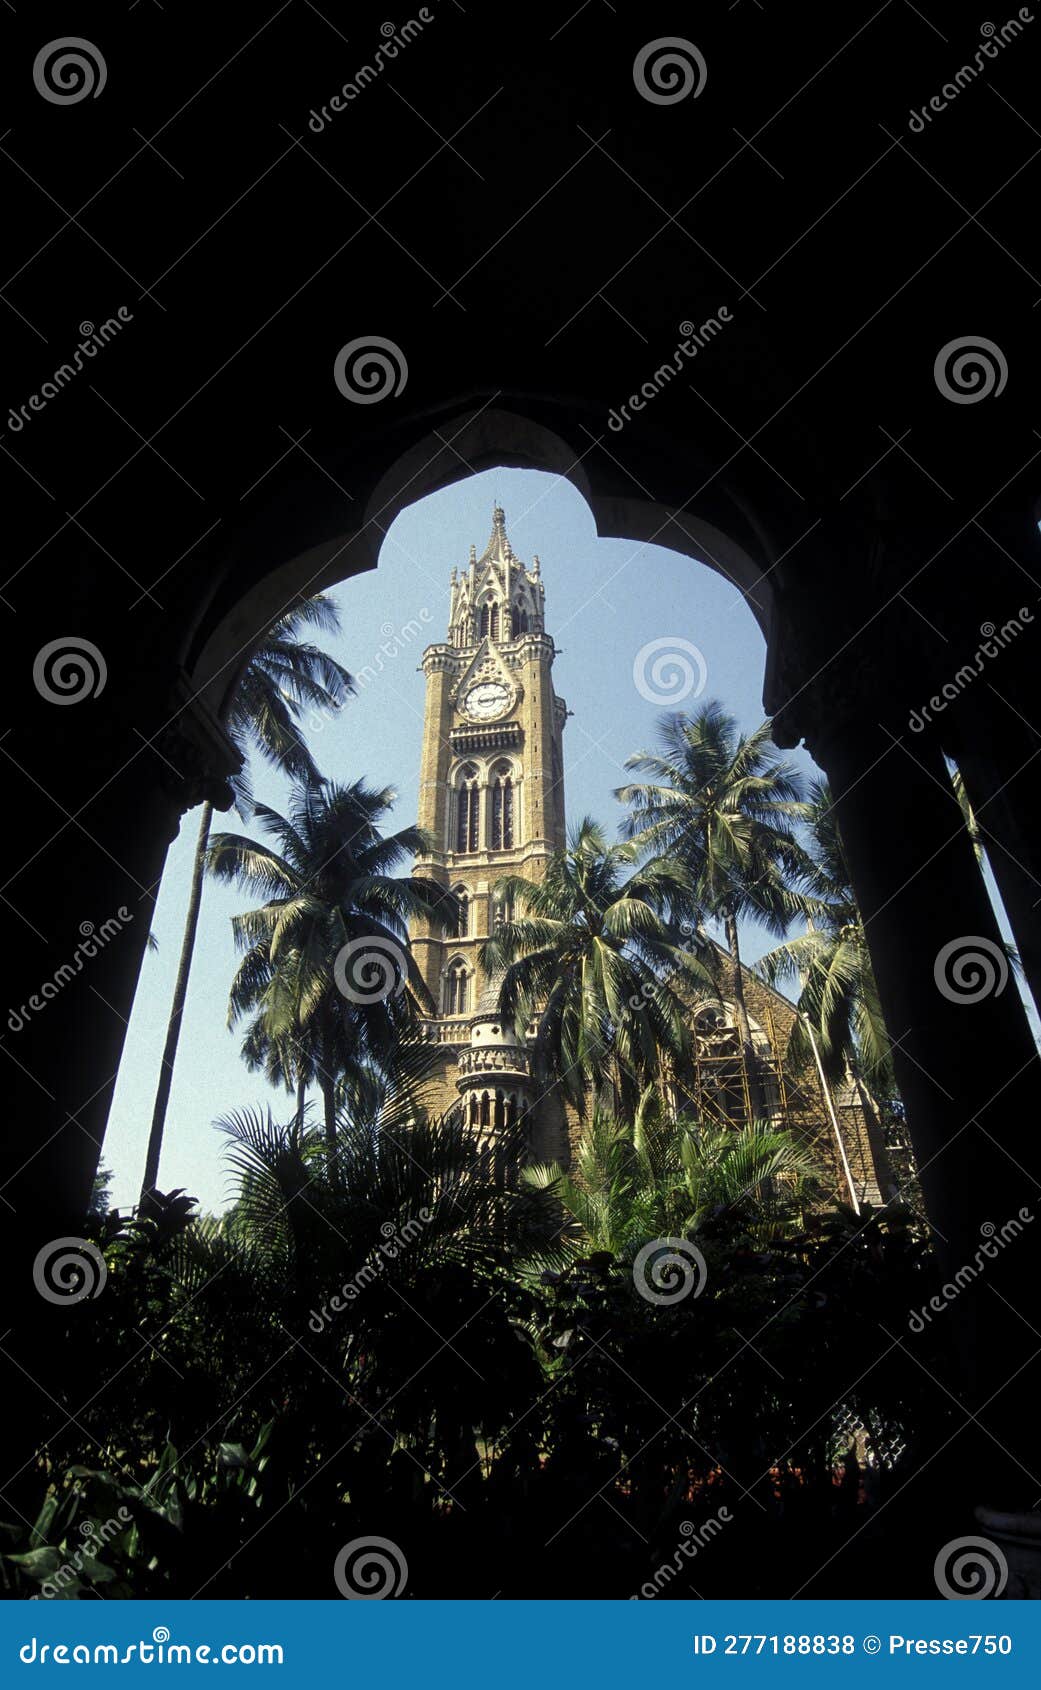 india mumbai colaba rajabai clock tower